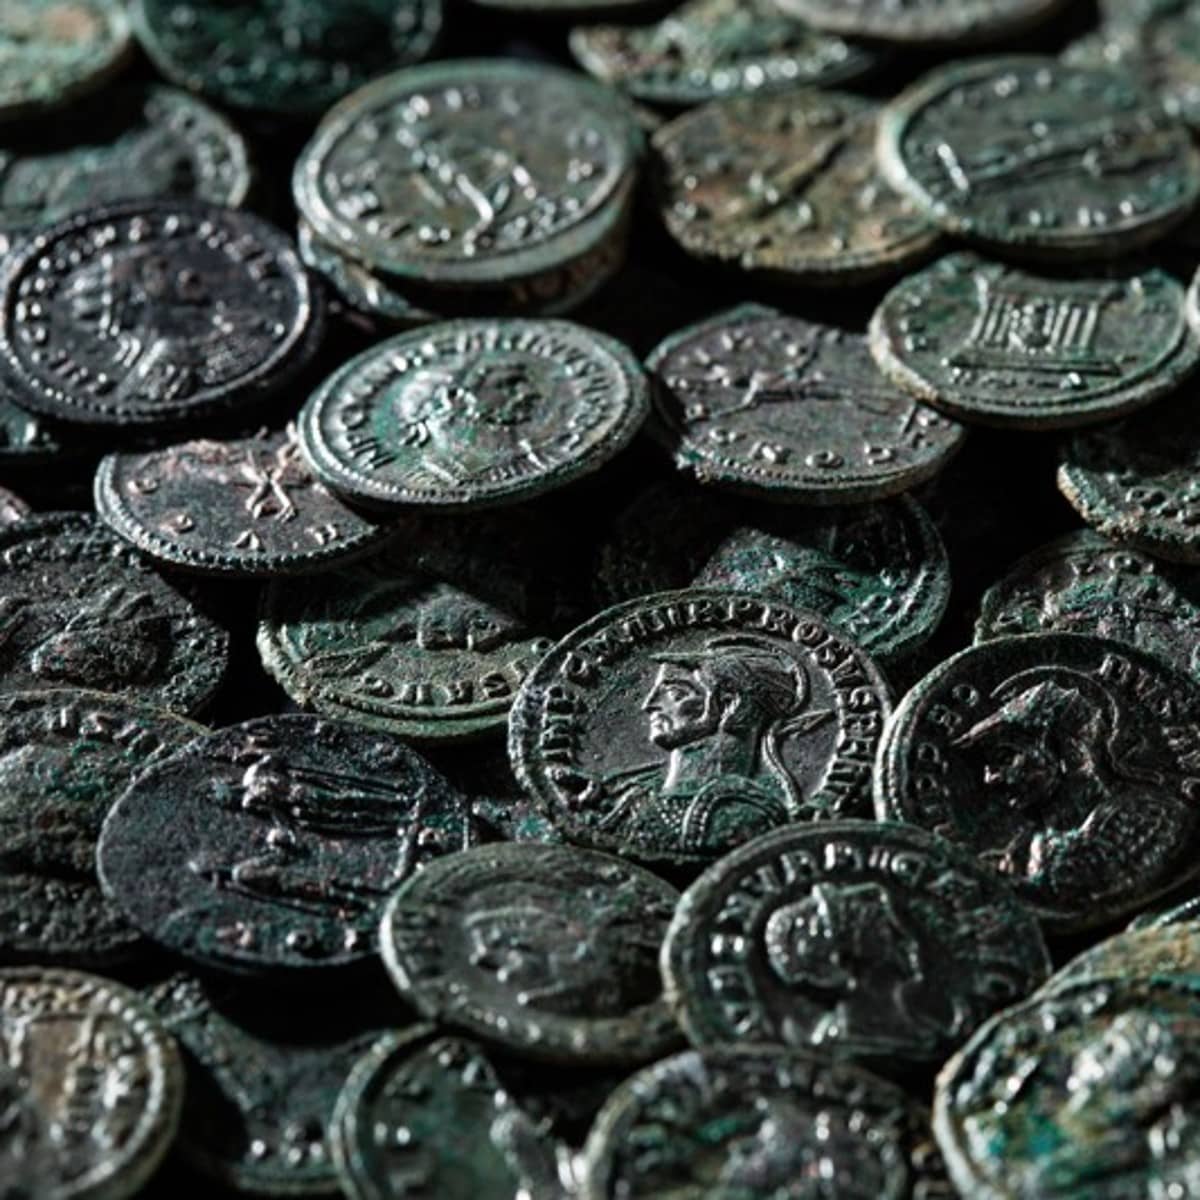 Rund und 250 der über 4000 Münzen sind vollständig restauriert. Sie sind in einem bemerkenswert guten Erhaltungszustand.